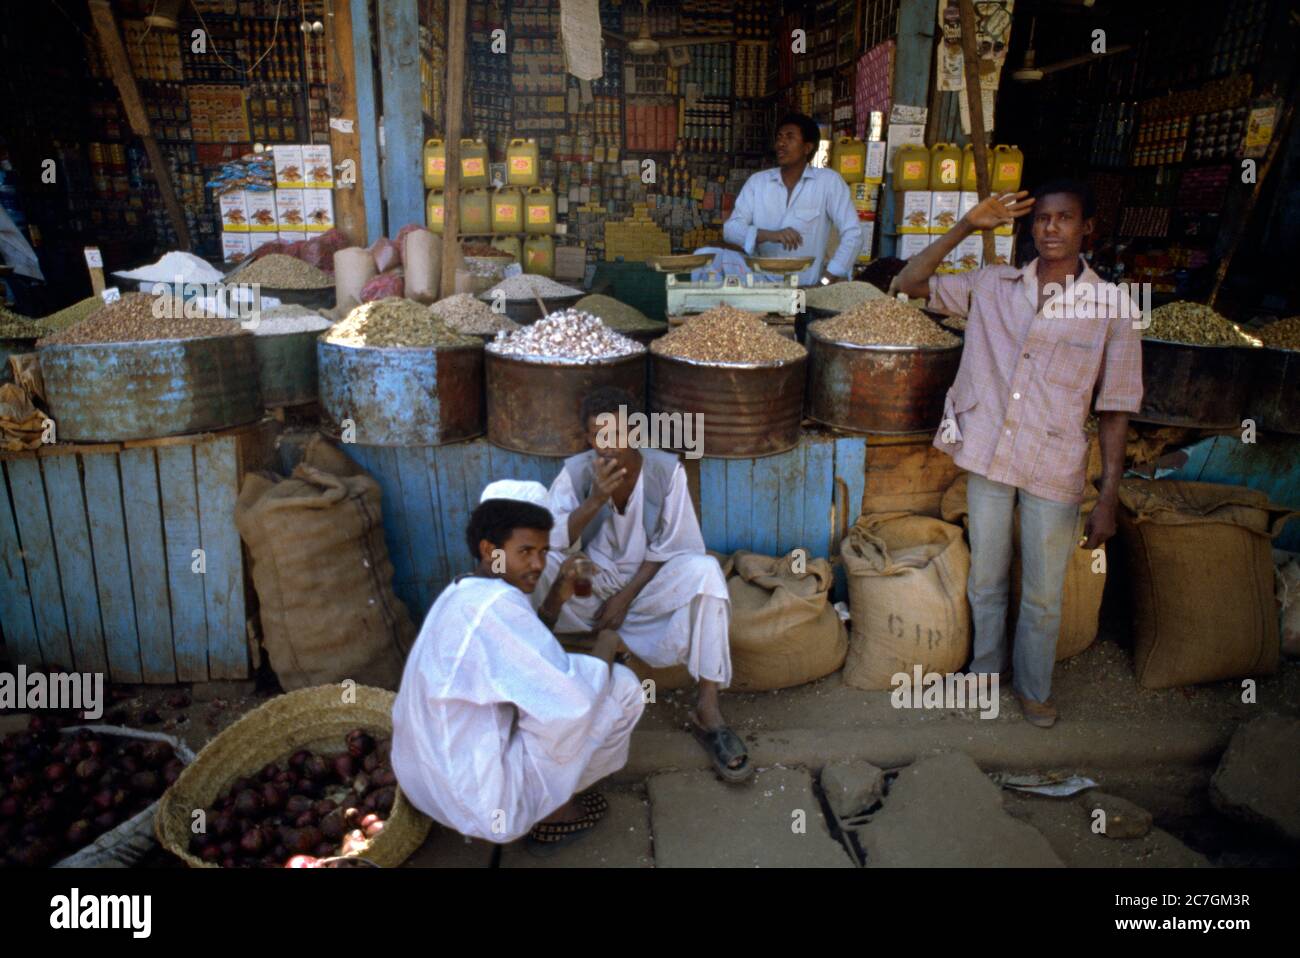 Khartoum Sudan Grocers Shop Market Stock Photo